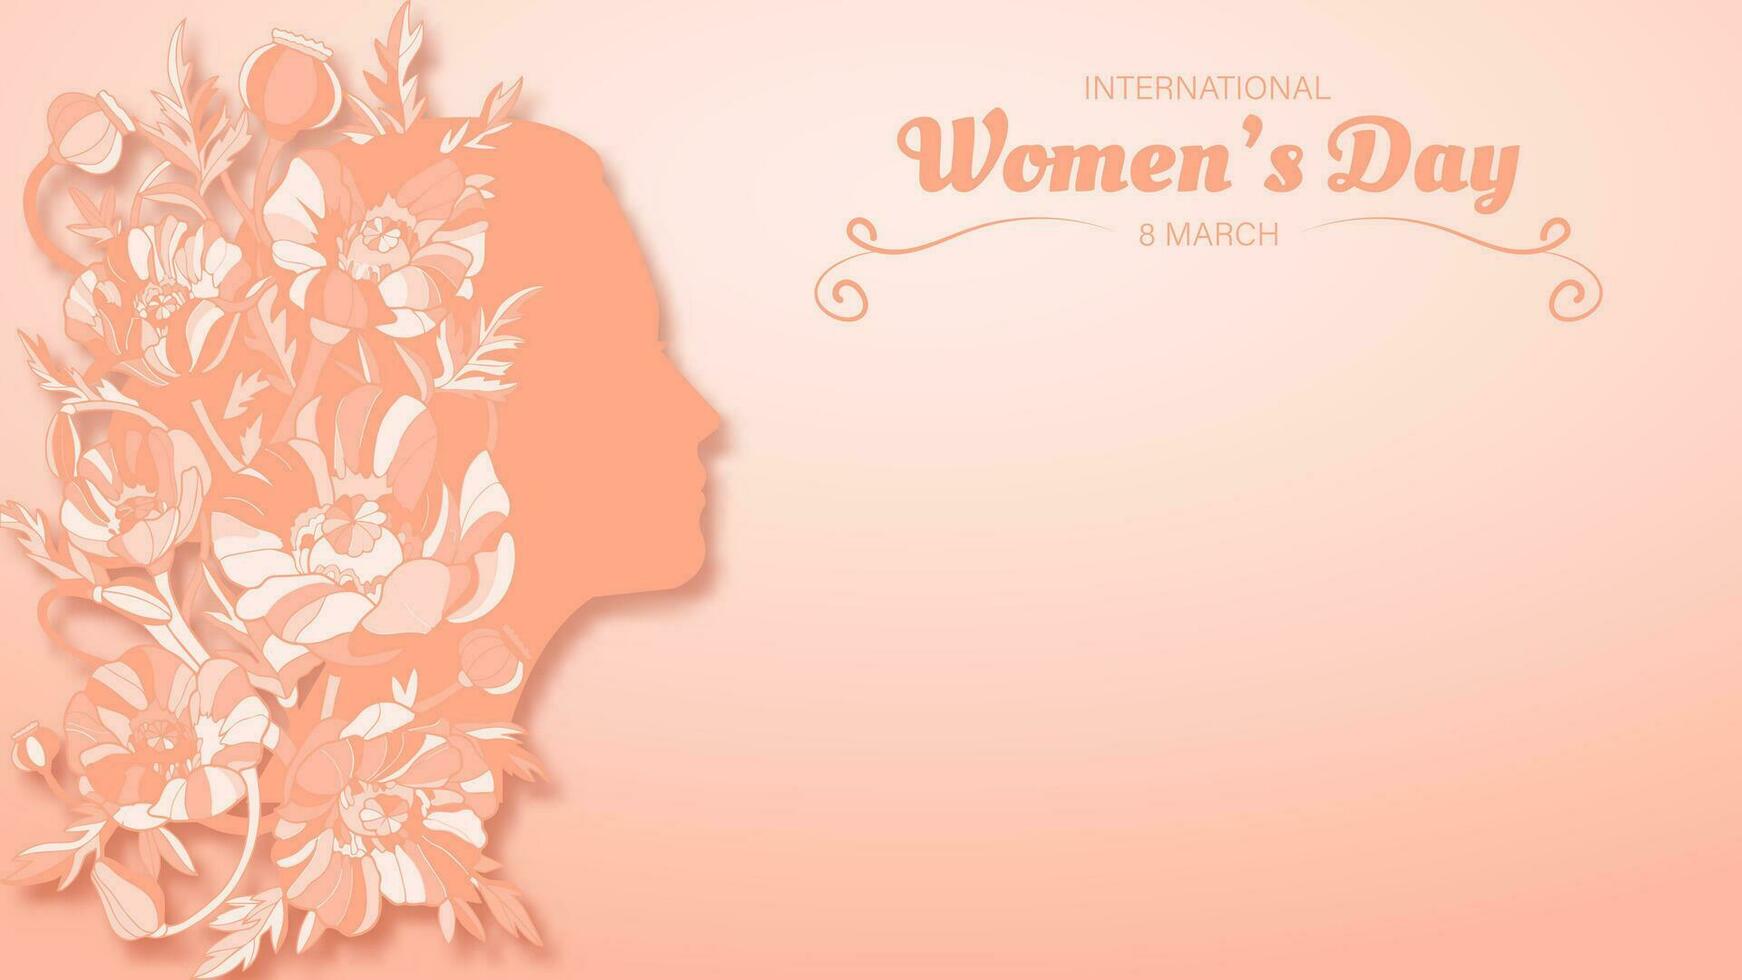 internationell kvinnors dag 8 Mars med persika ludd färger vektor